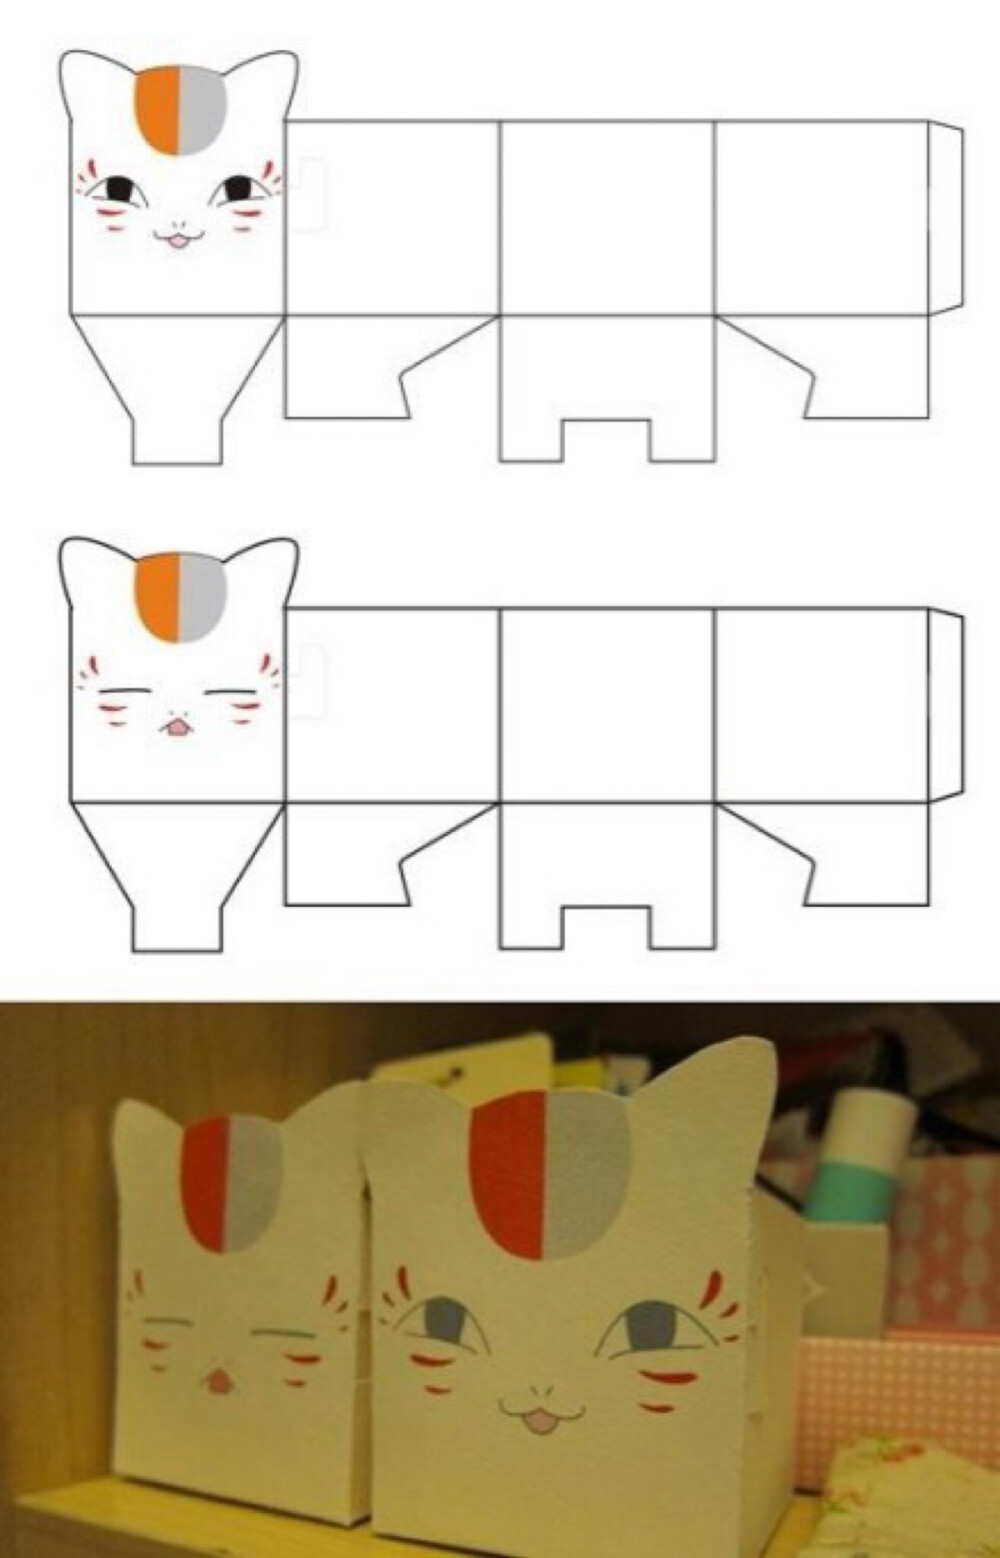 硬质纸就可以手工diy做一个收纳盒,除了猫咪也可以设计其他形象哦